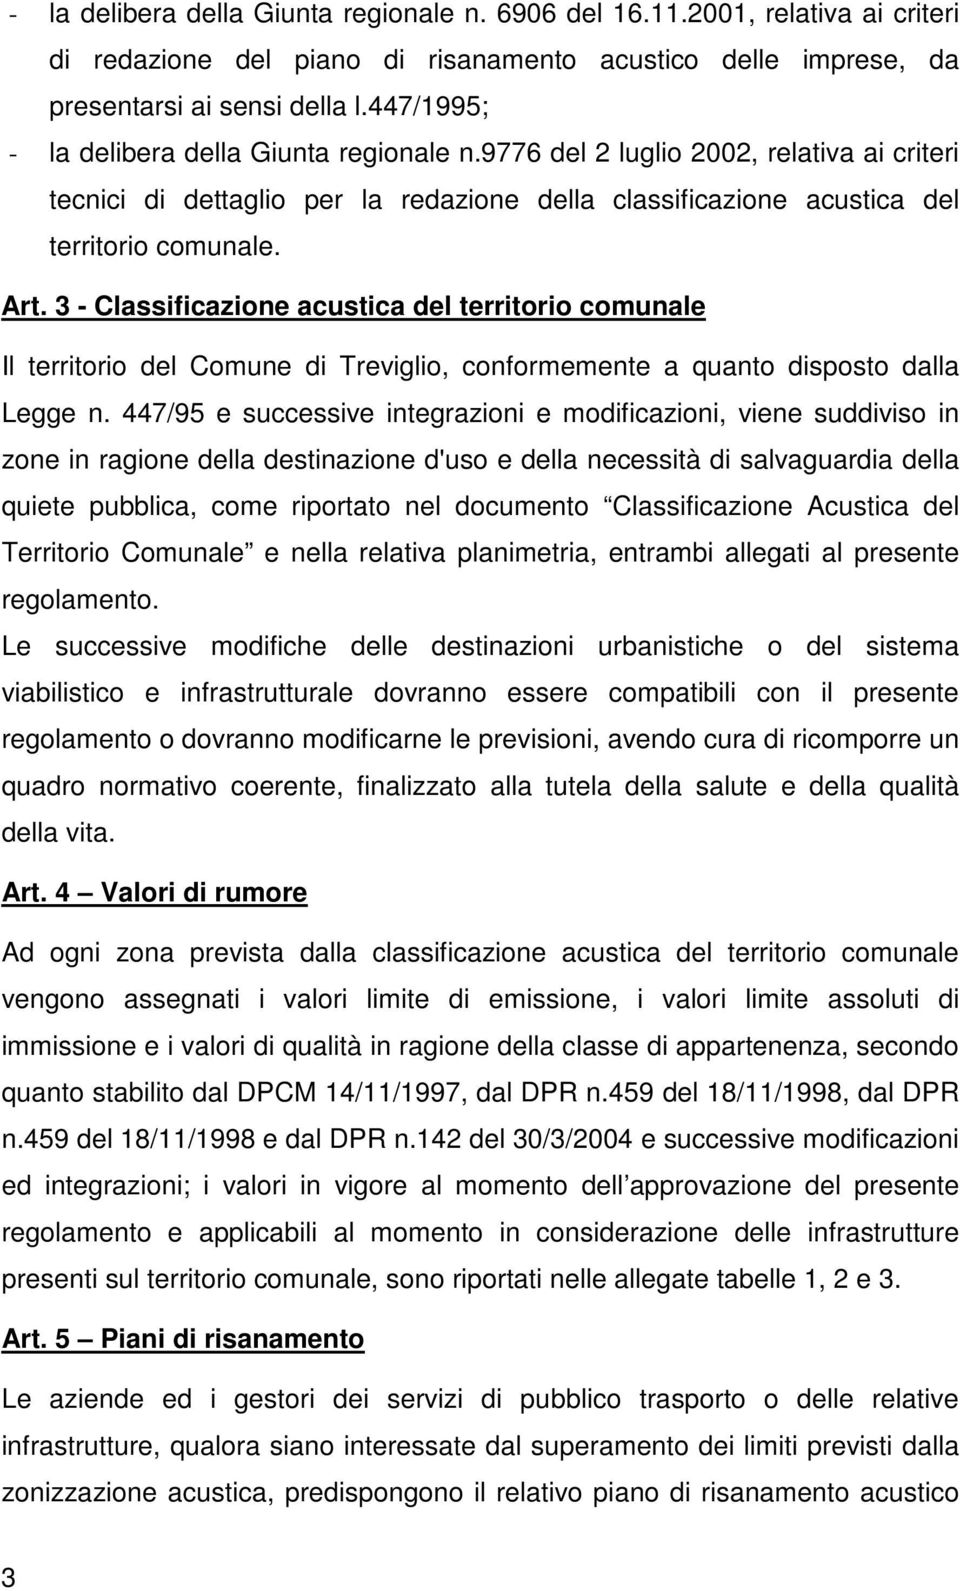 3 - Classificazione acustica del territorio comunale Il territorio del Comune di Treviglio, conformemente a quanto disposto dalla Legge n.